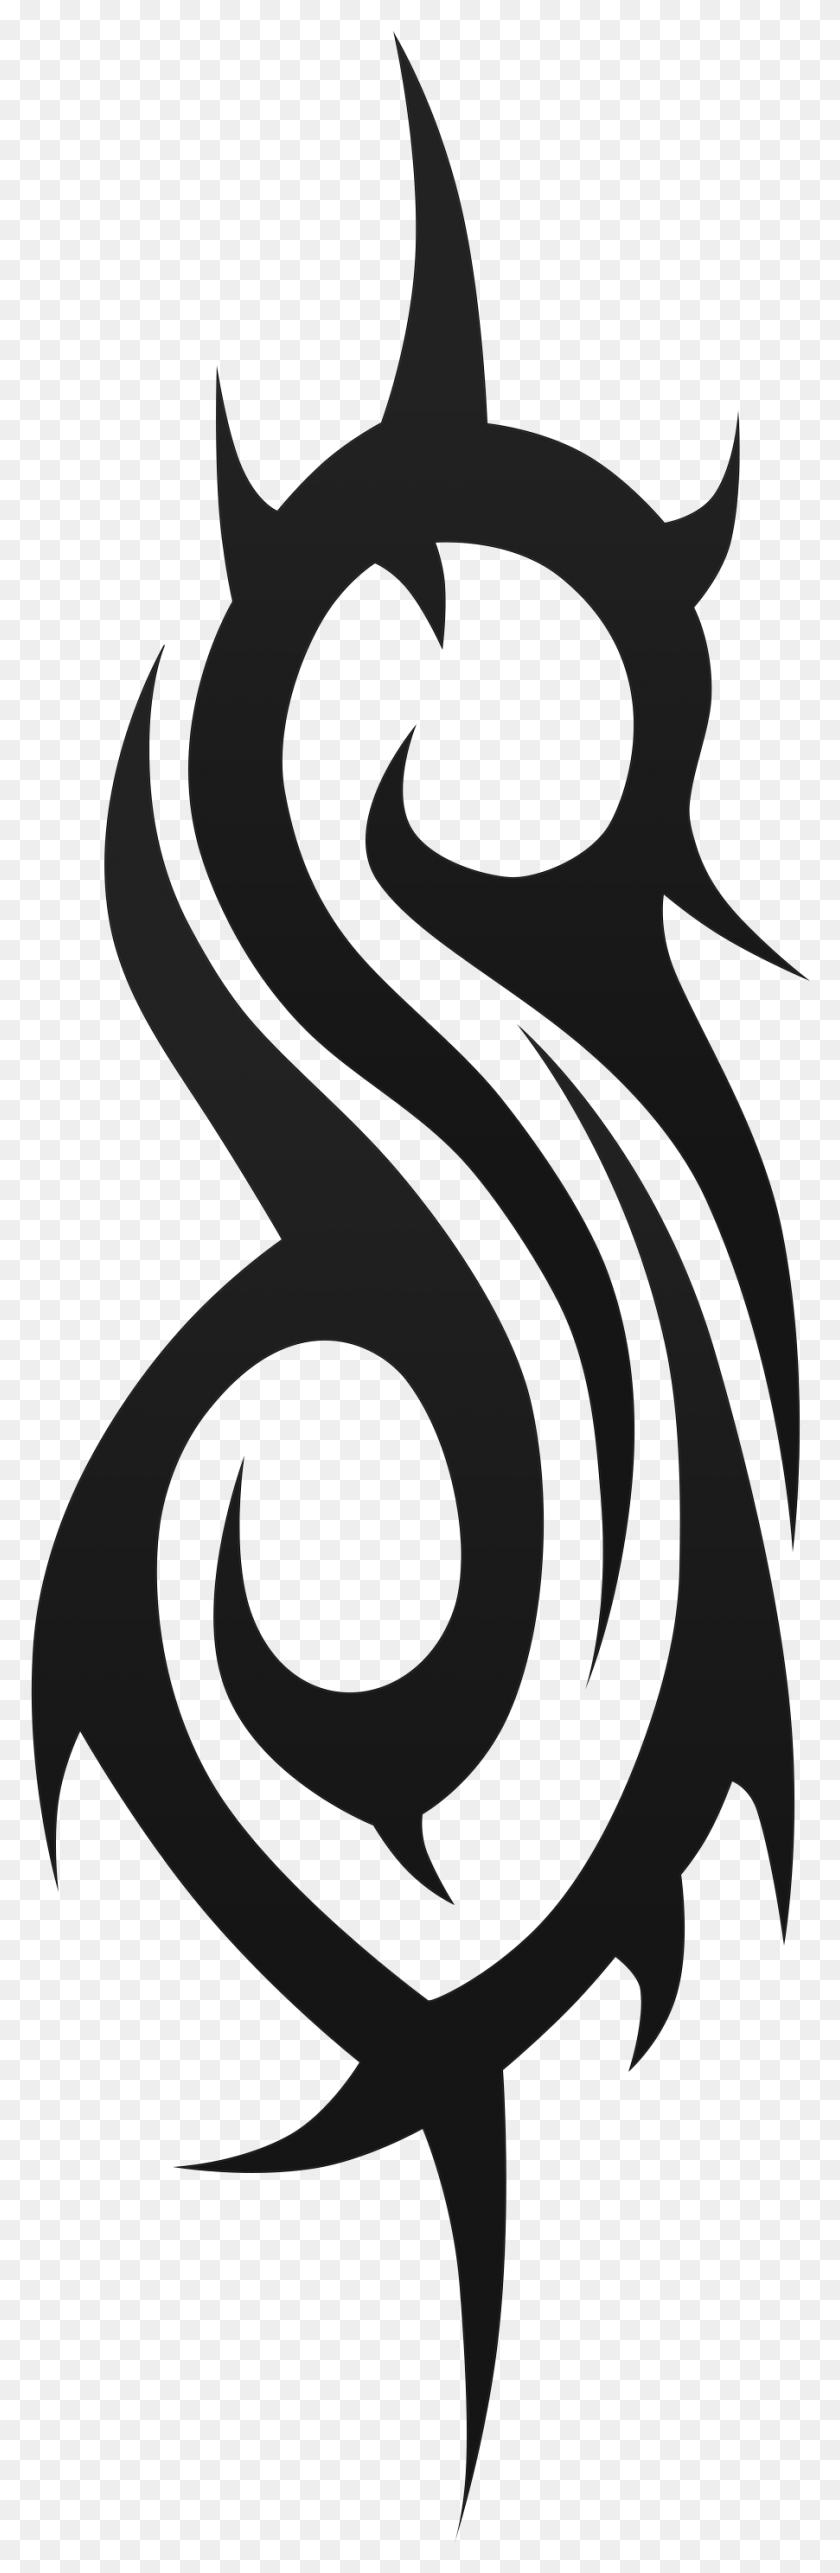 902x2907 Логотипы Slipknot Блог Татуировки Логотип Slipknot, Текст, Оружие, Оружие Hd Png Скачать